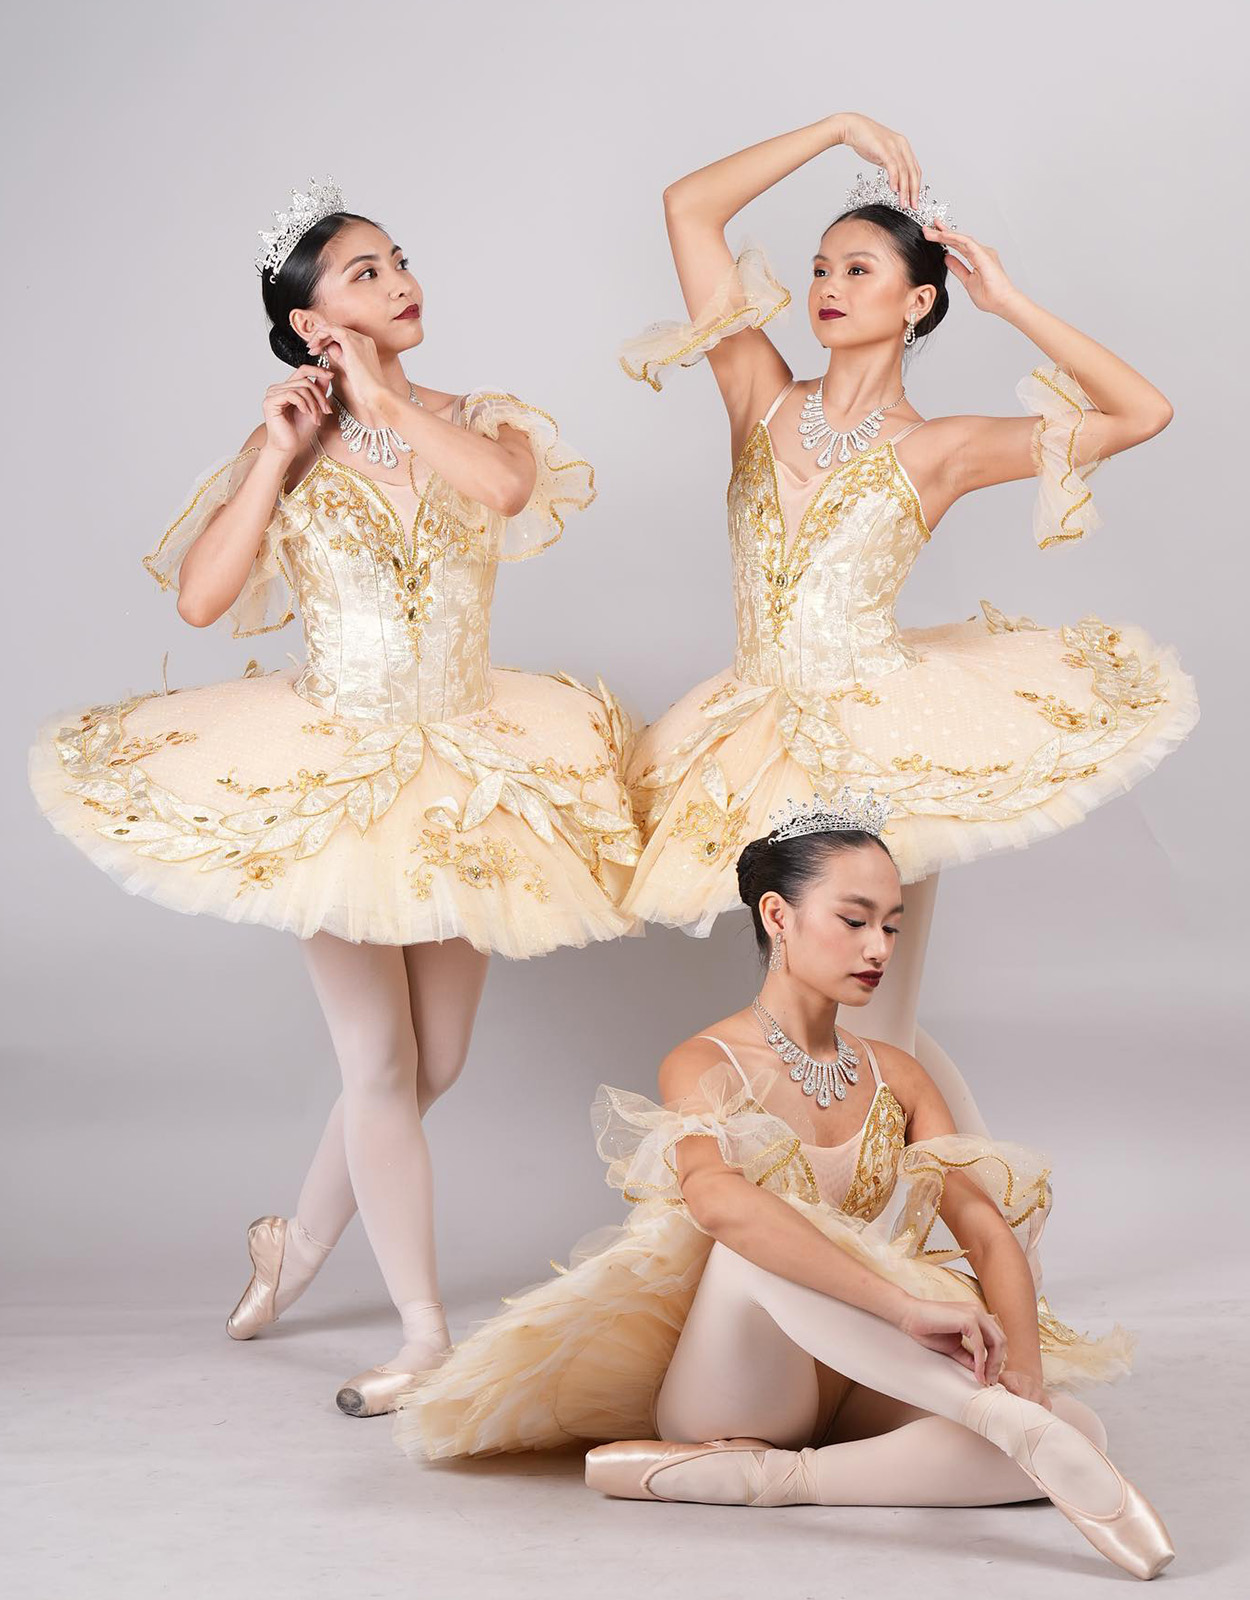 Halili-Cruz School of Ballet summer dance classes